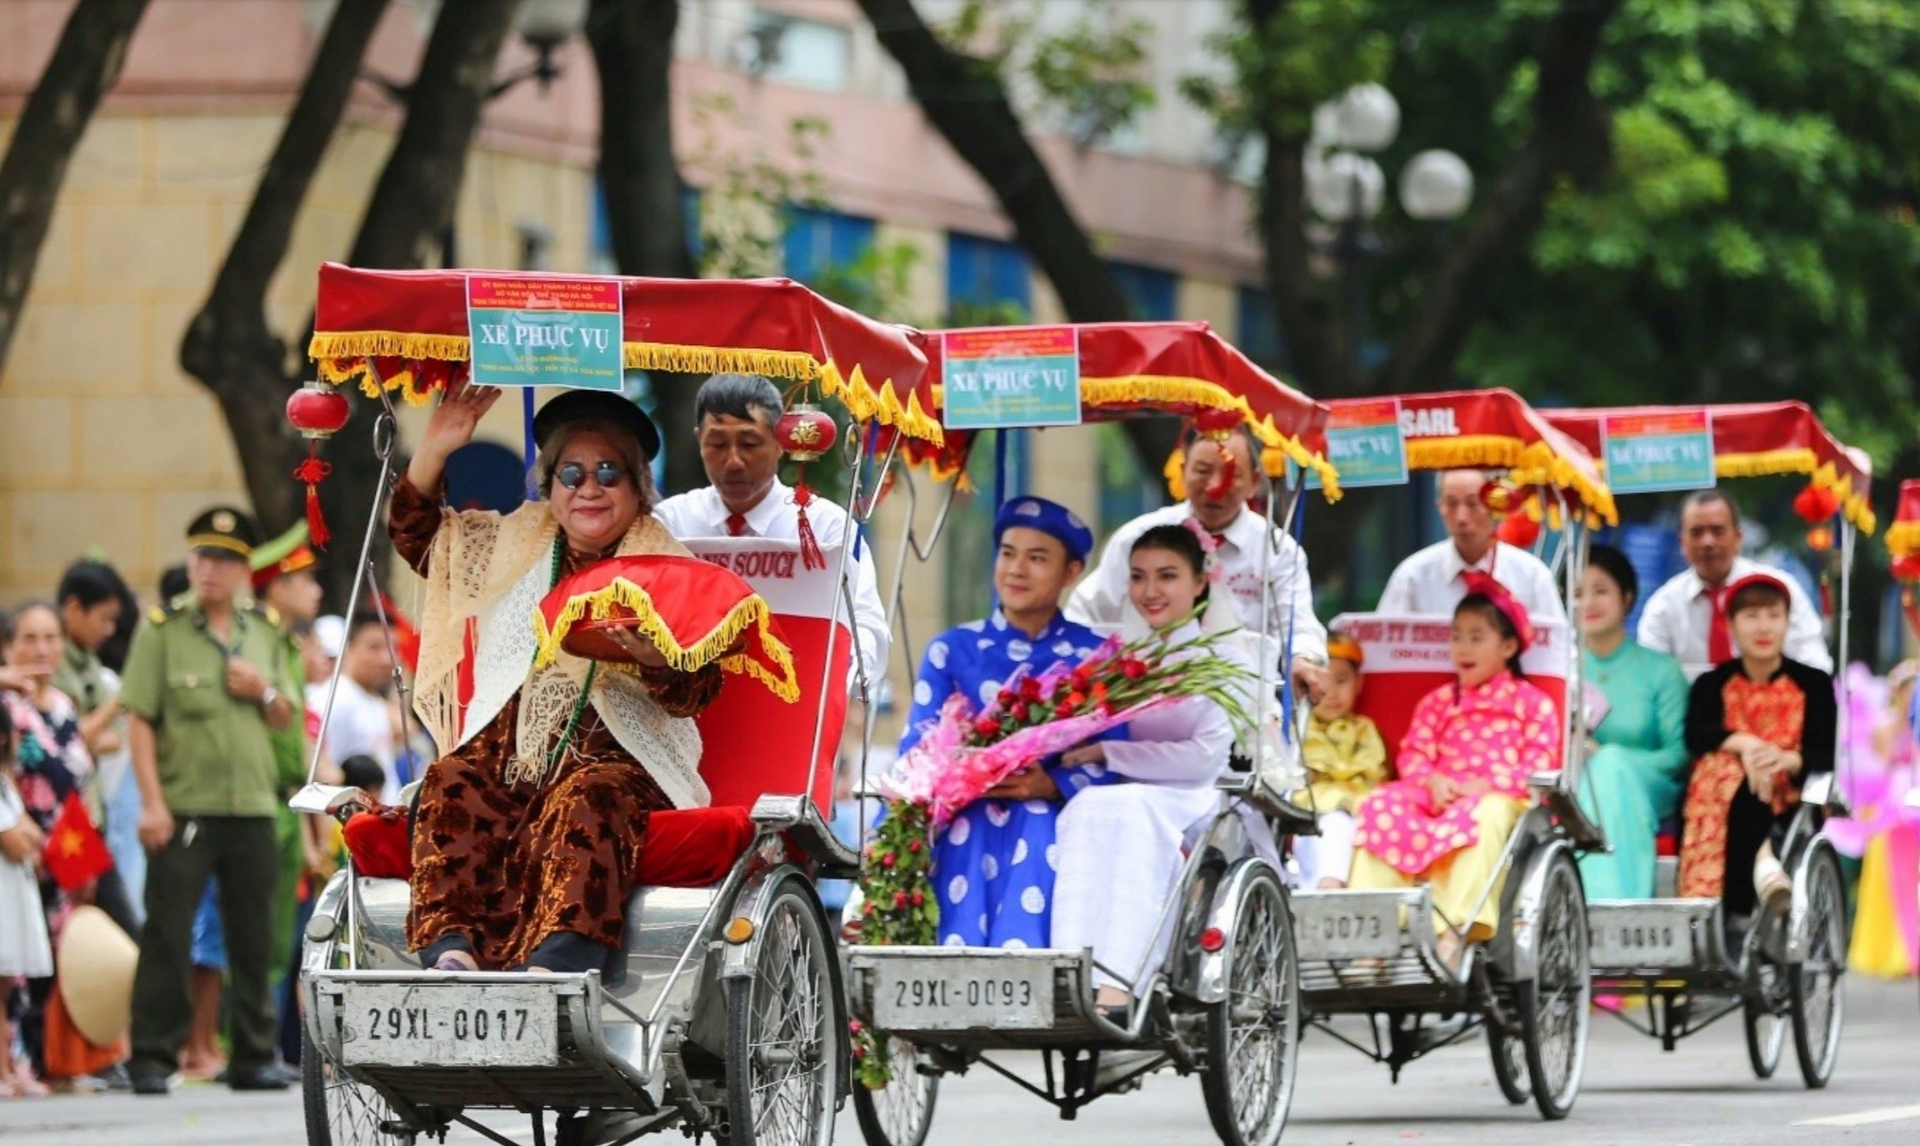 Ngoài các gian hàng tour du lịch, ẩm thực làng nghề, quầy bia mậu dịch, Lễ hội cũng có hoạt động tái hiện nét đẹp đám cưới xưa Hà Nội bằng xích lô